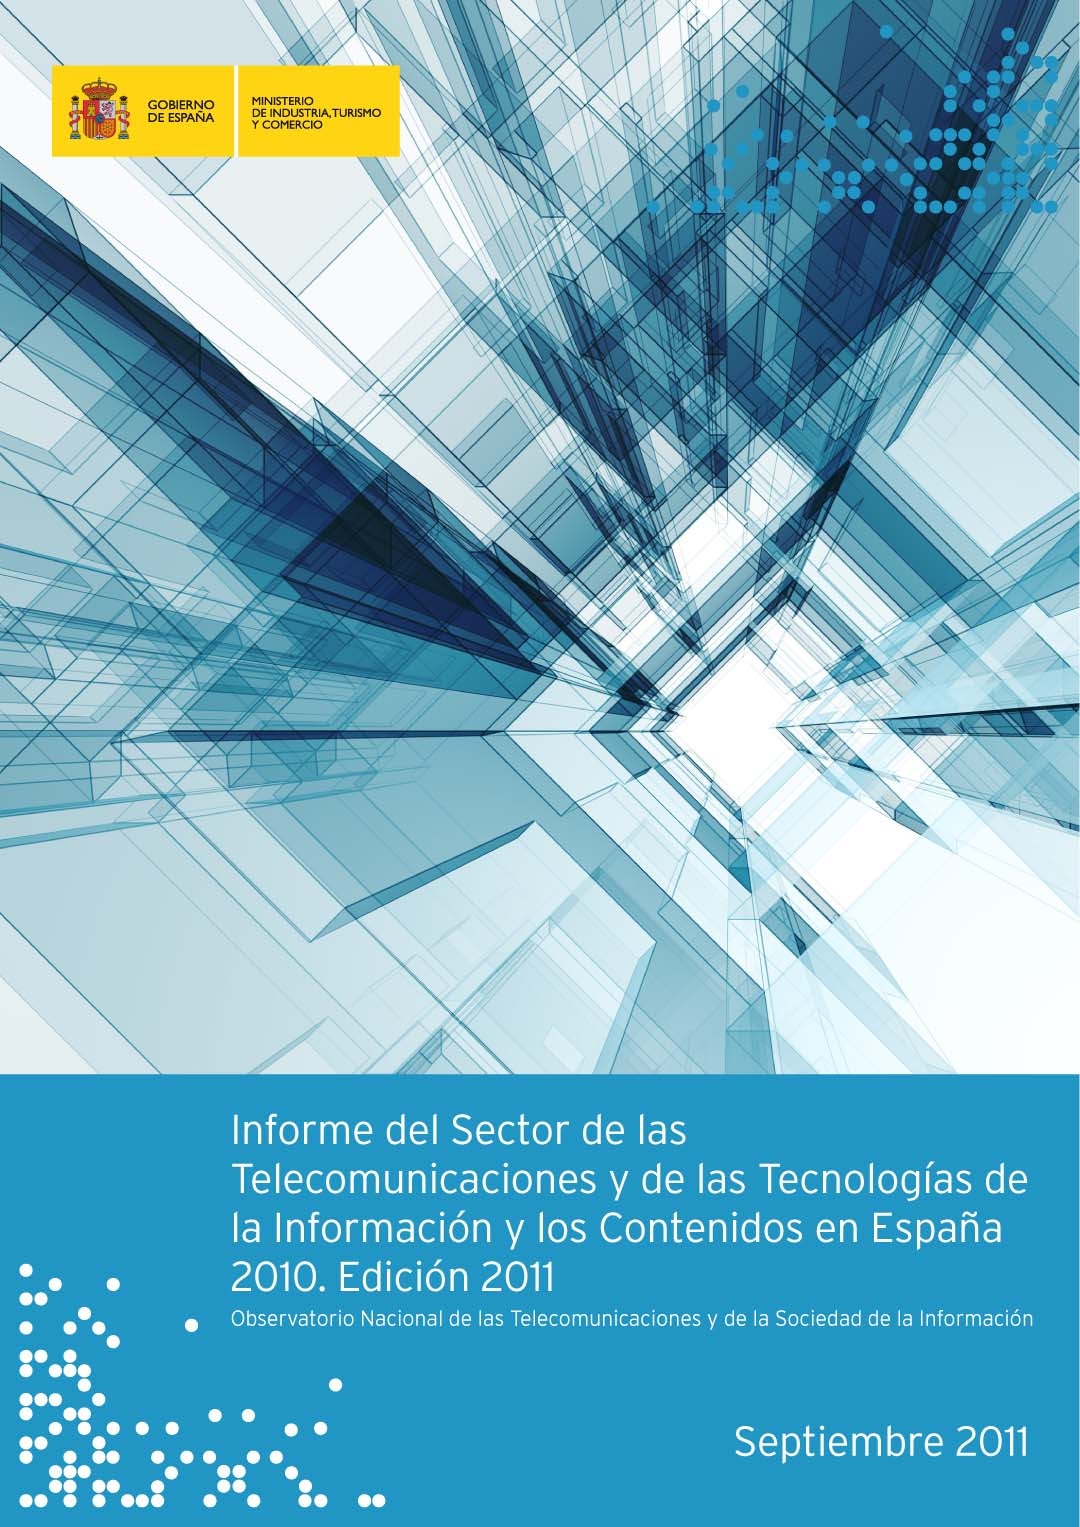 Informe del Sector de las Telecomunicaciones, las  Tecnologías  de  la  Información  y  los Contenidos en España 2010 